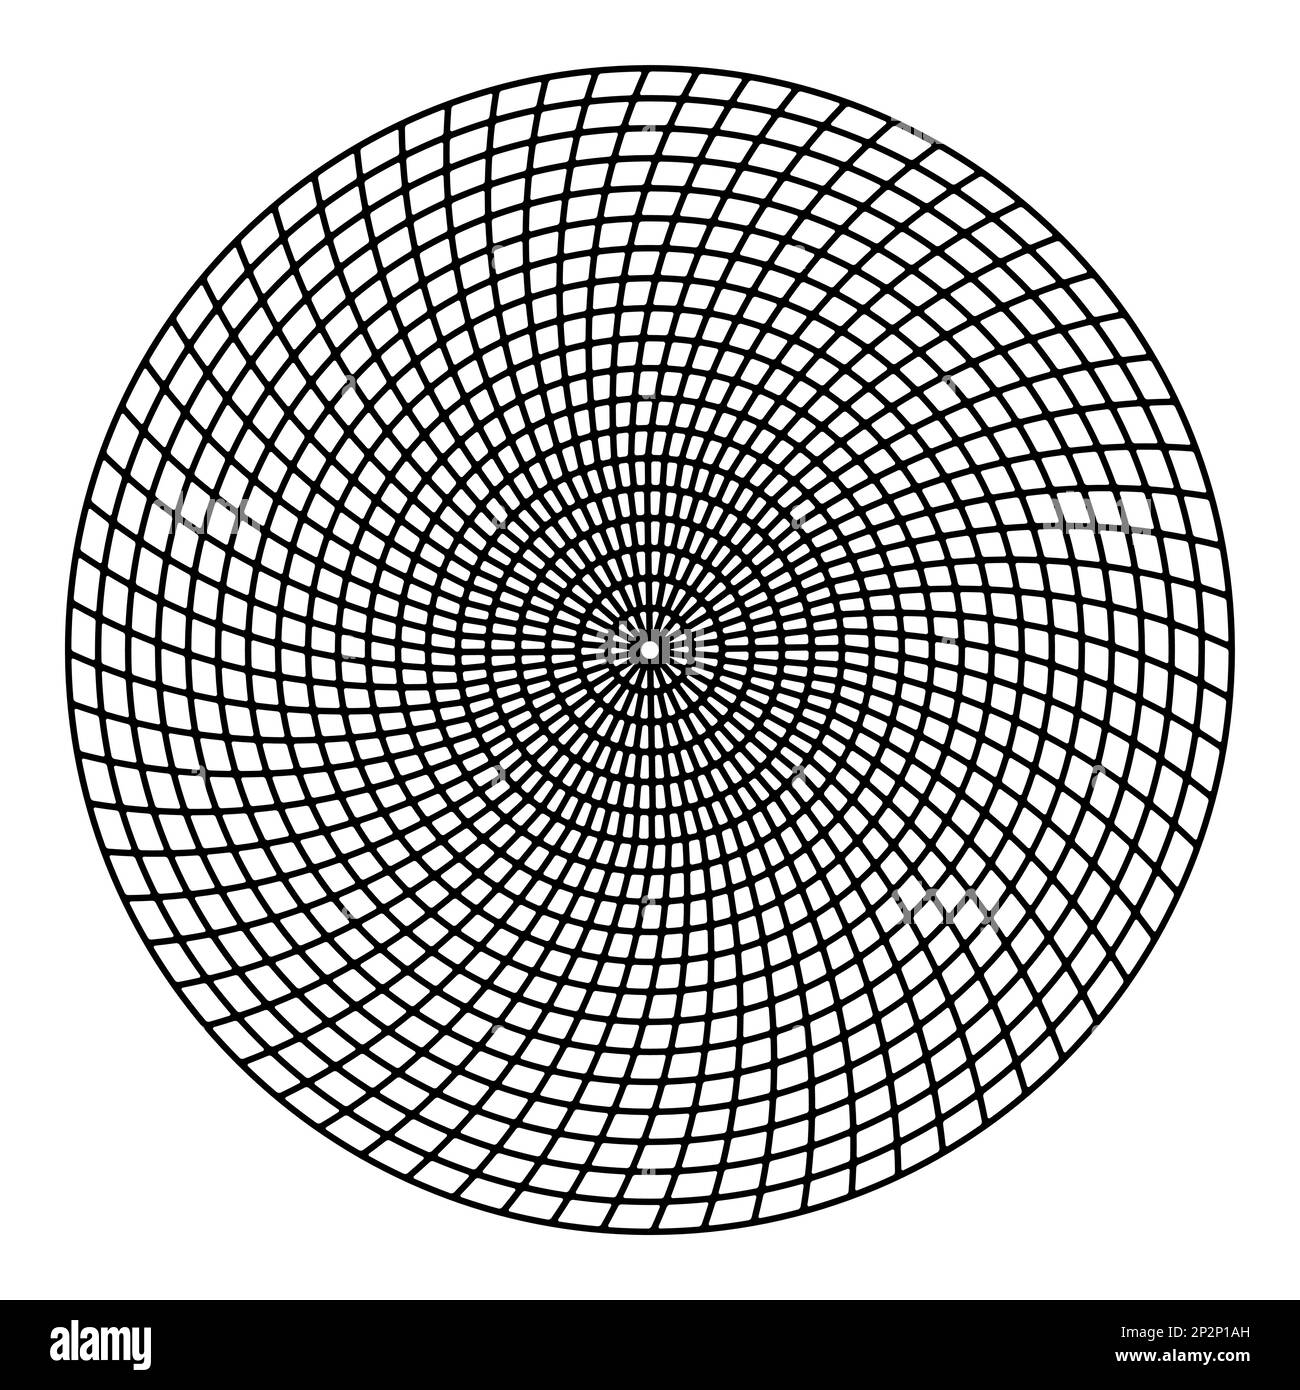 Abstrakte Darstellung eines spiralförmigen Kreismusters Stock Vektor